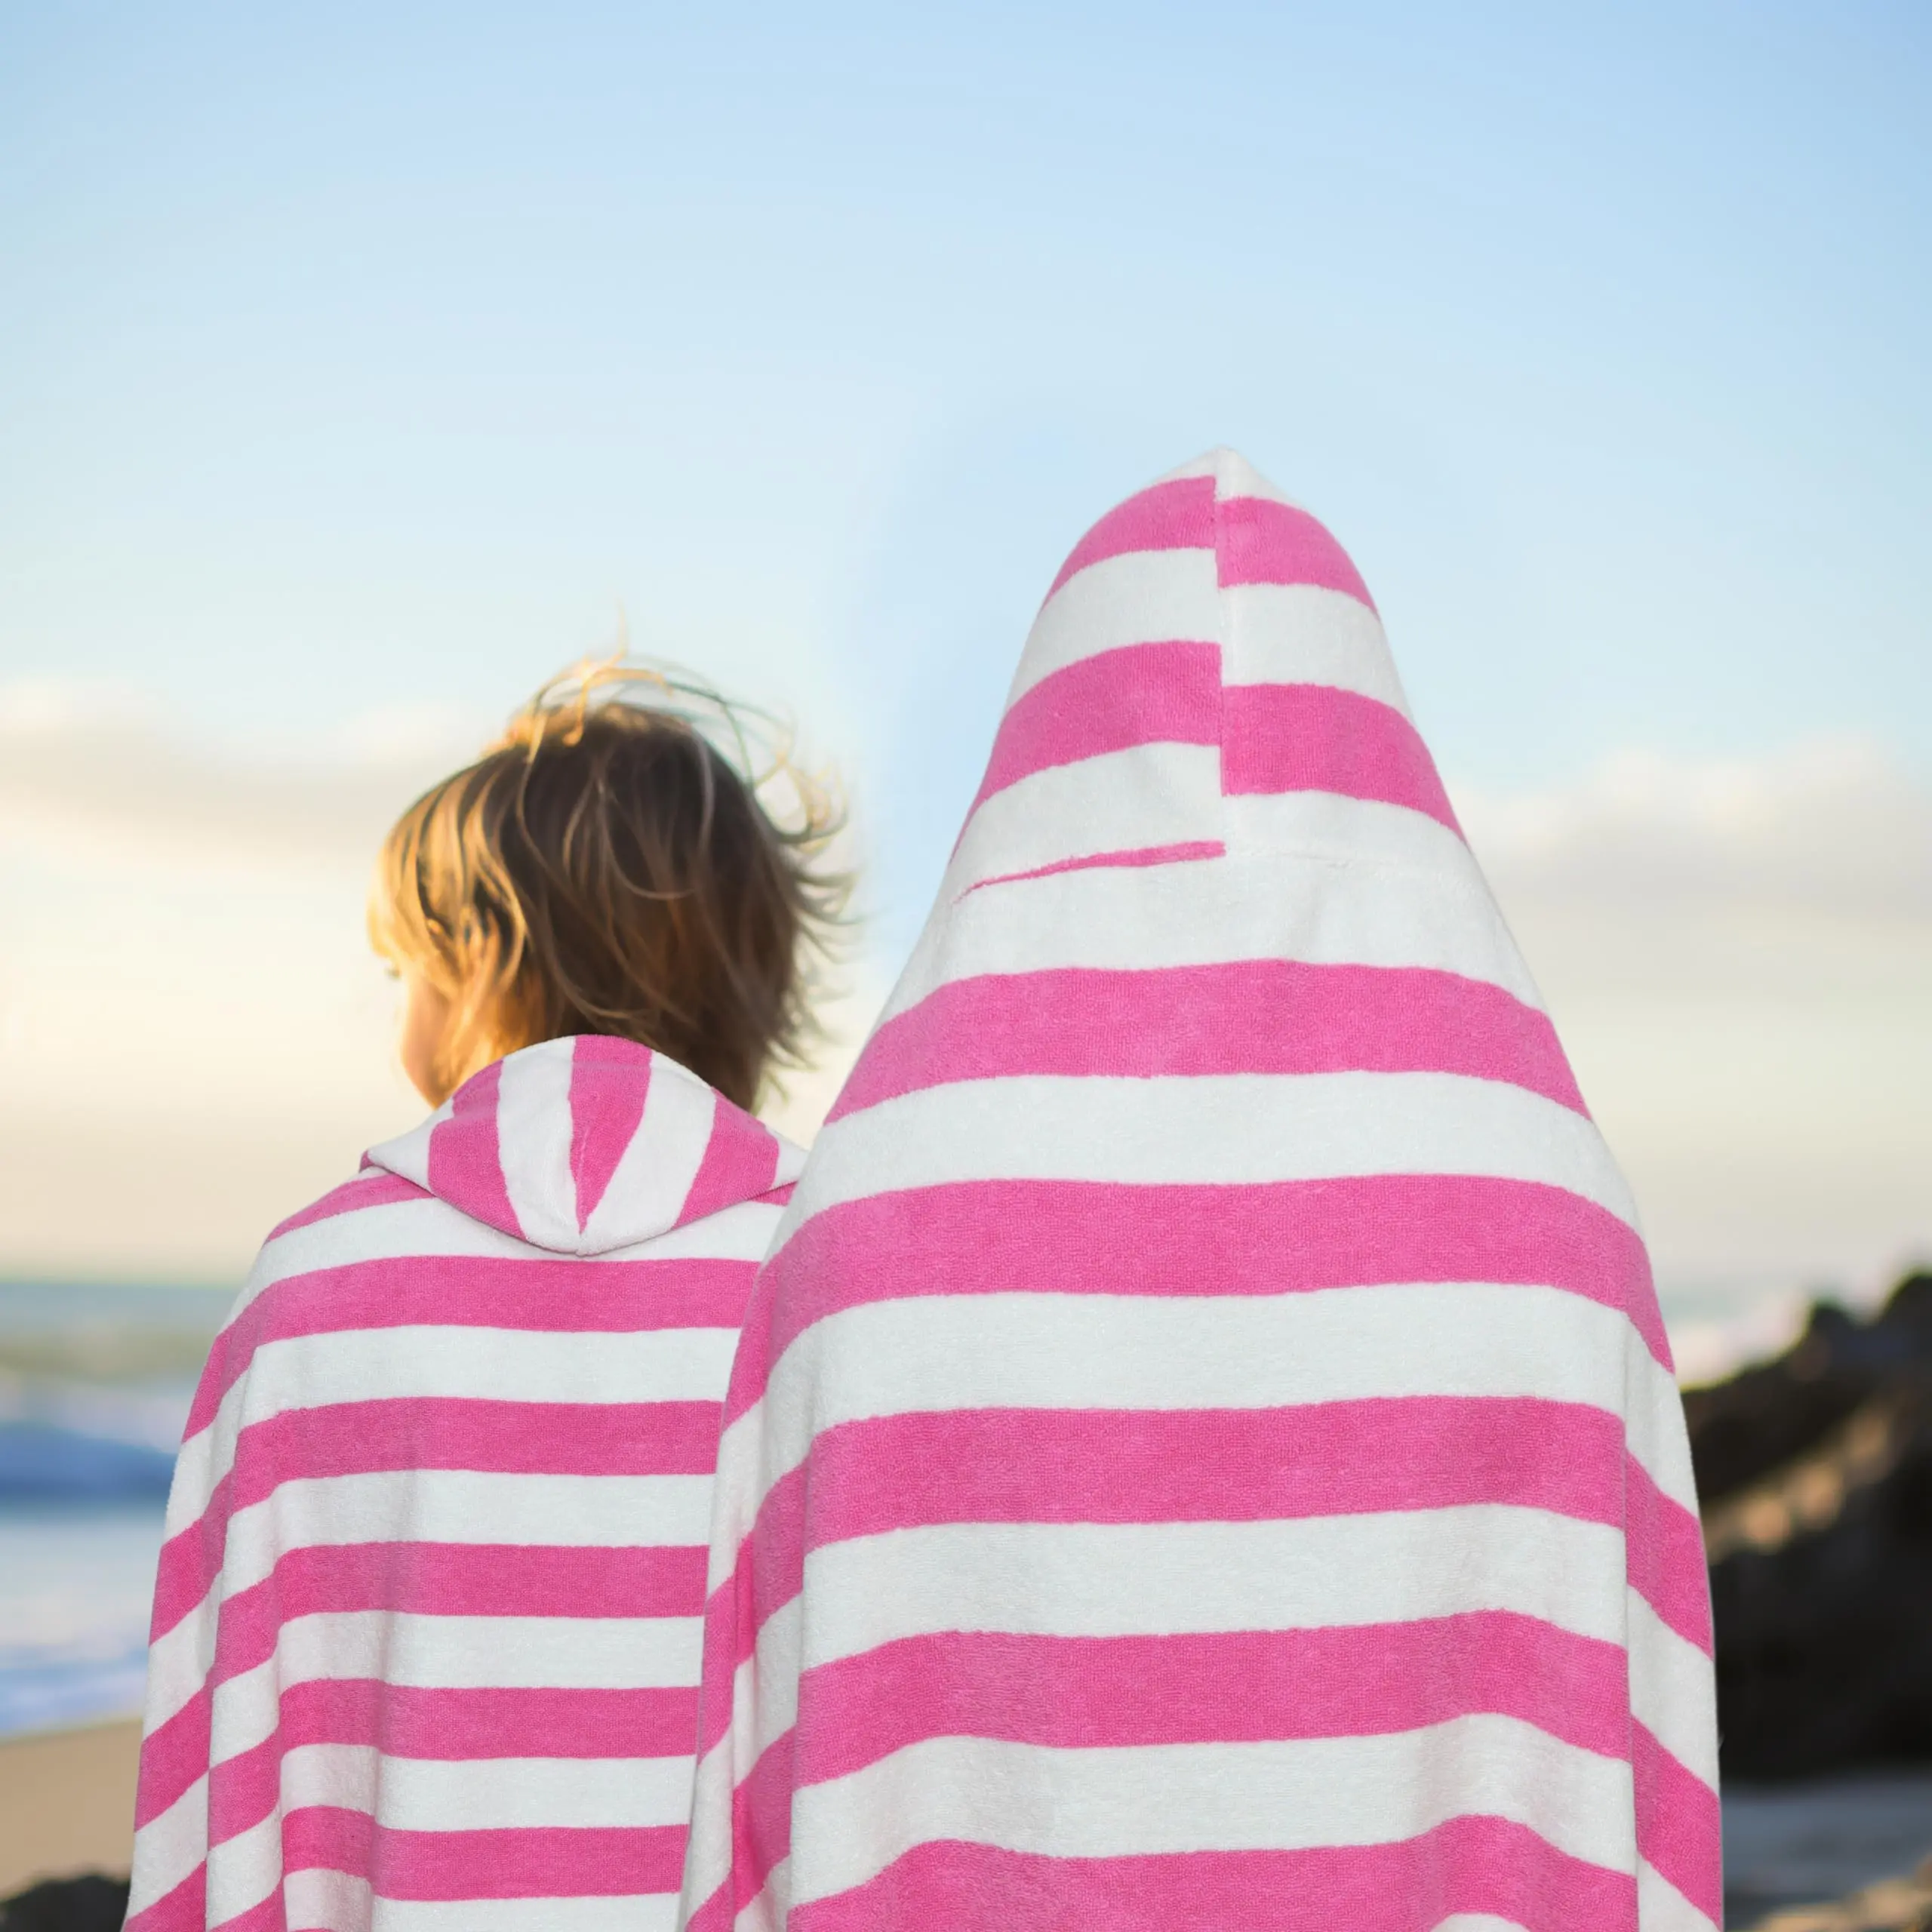 مخصصة بقلنسوة بانشو r للأطفال منشفة للشاطئ مريحة ماصة مخطط ثوب للشاطئ للاستعمال مرة أخرى طفل بقلنسوة بونشو للتزلج